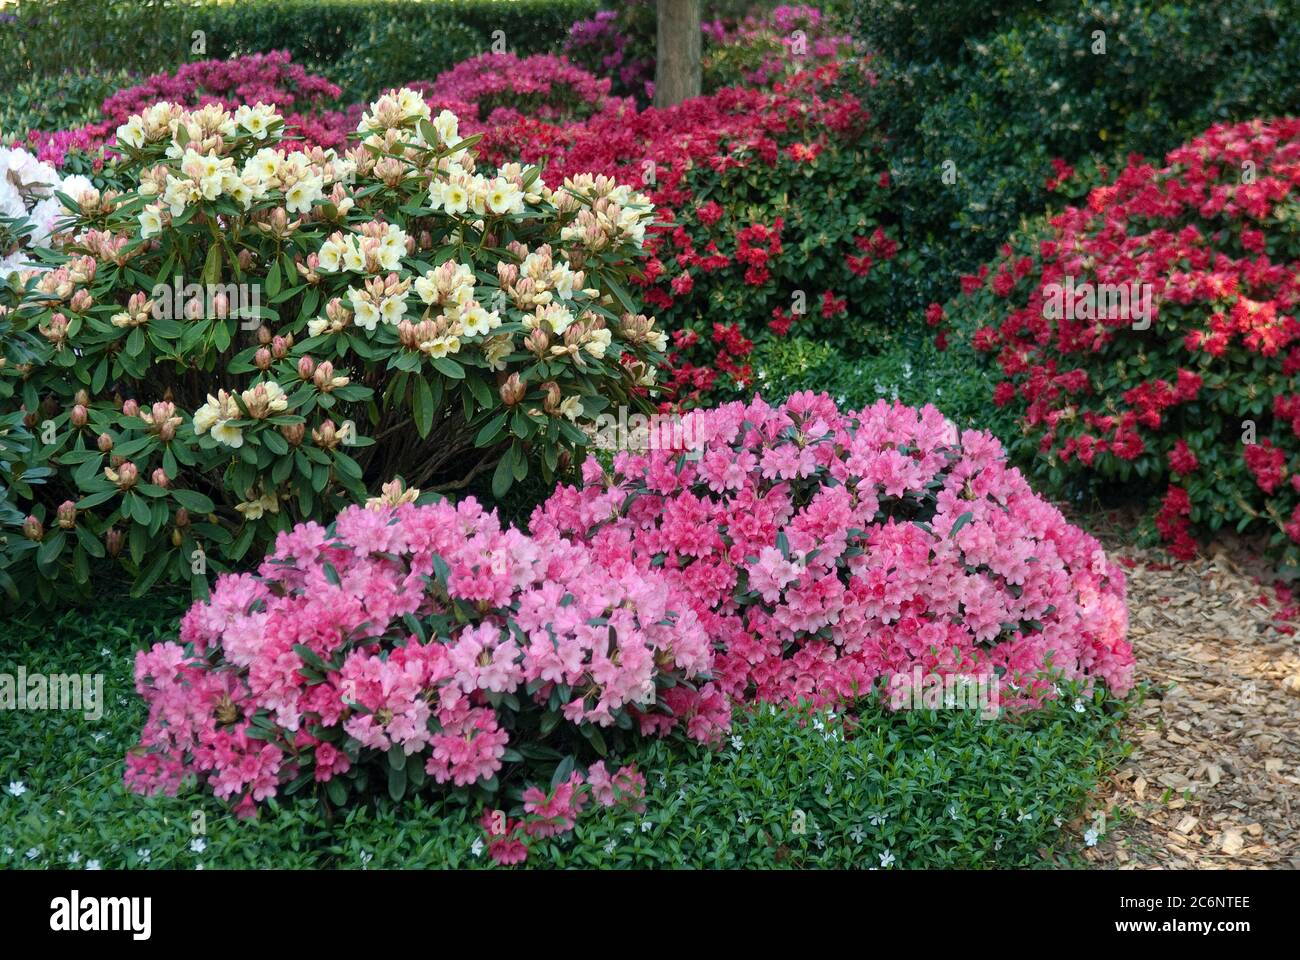 Rhododendron-Hybriden Rhododendron, Rhododendron Rhododendron hybrids Stock Photo